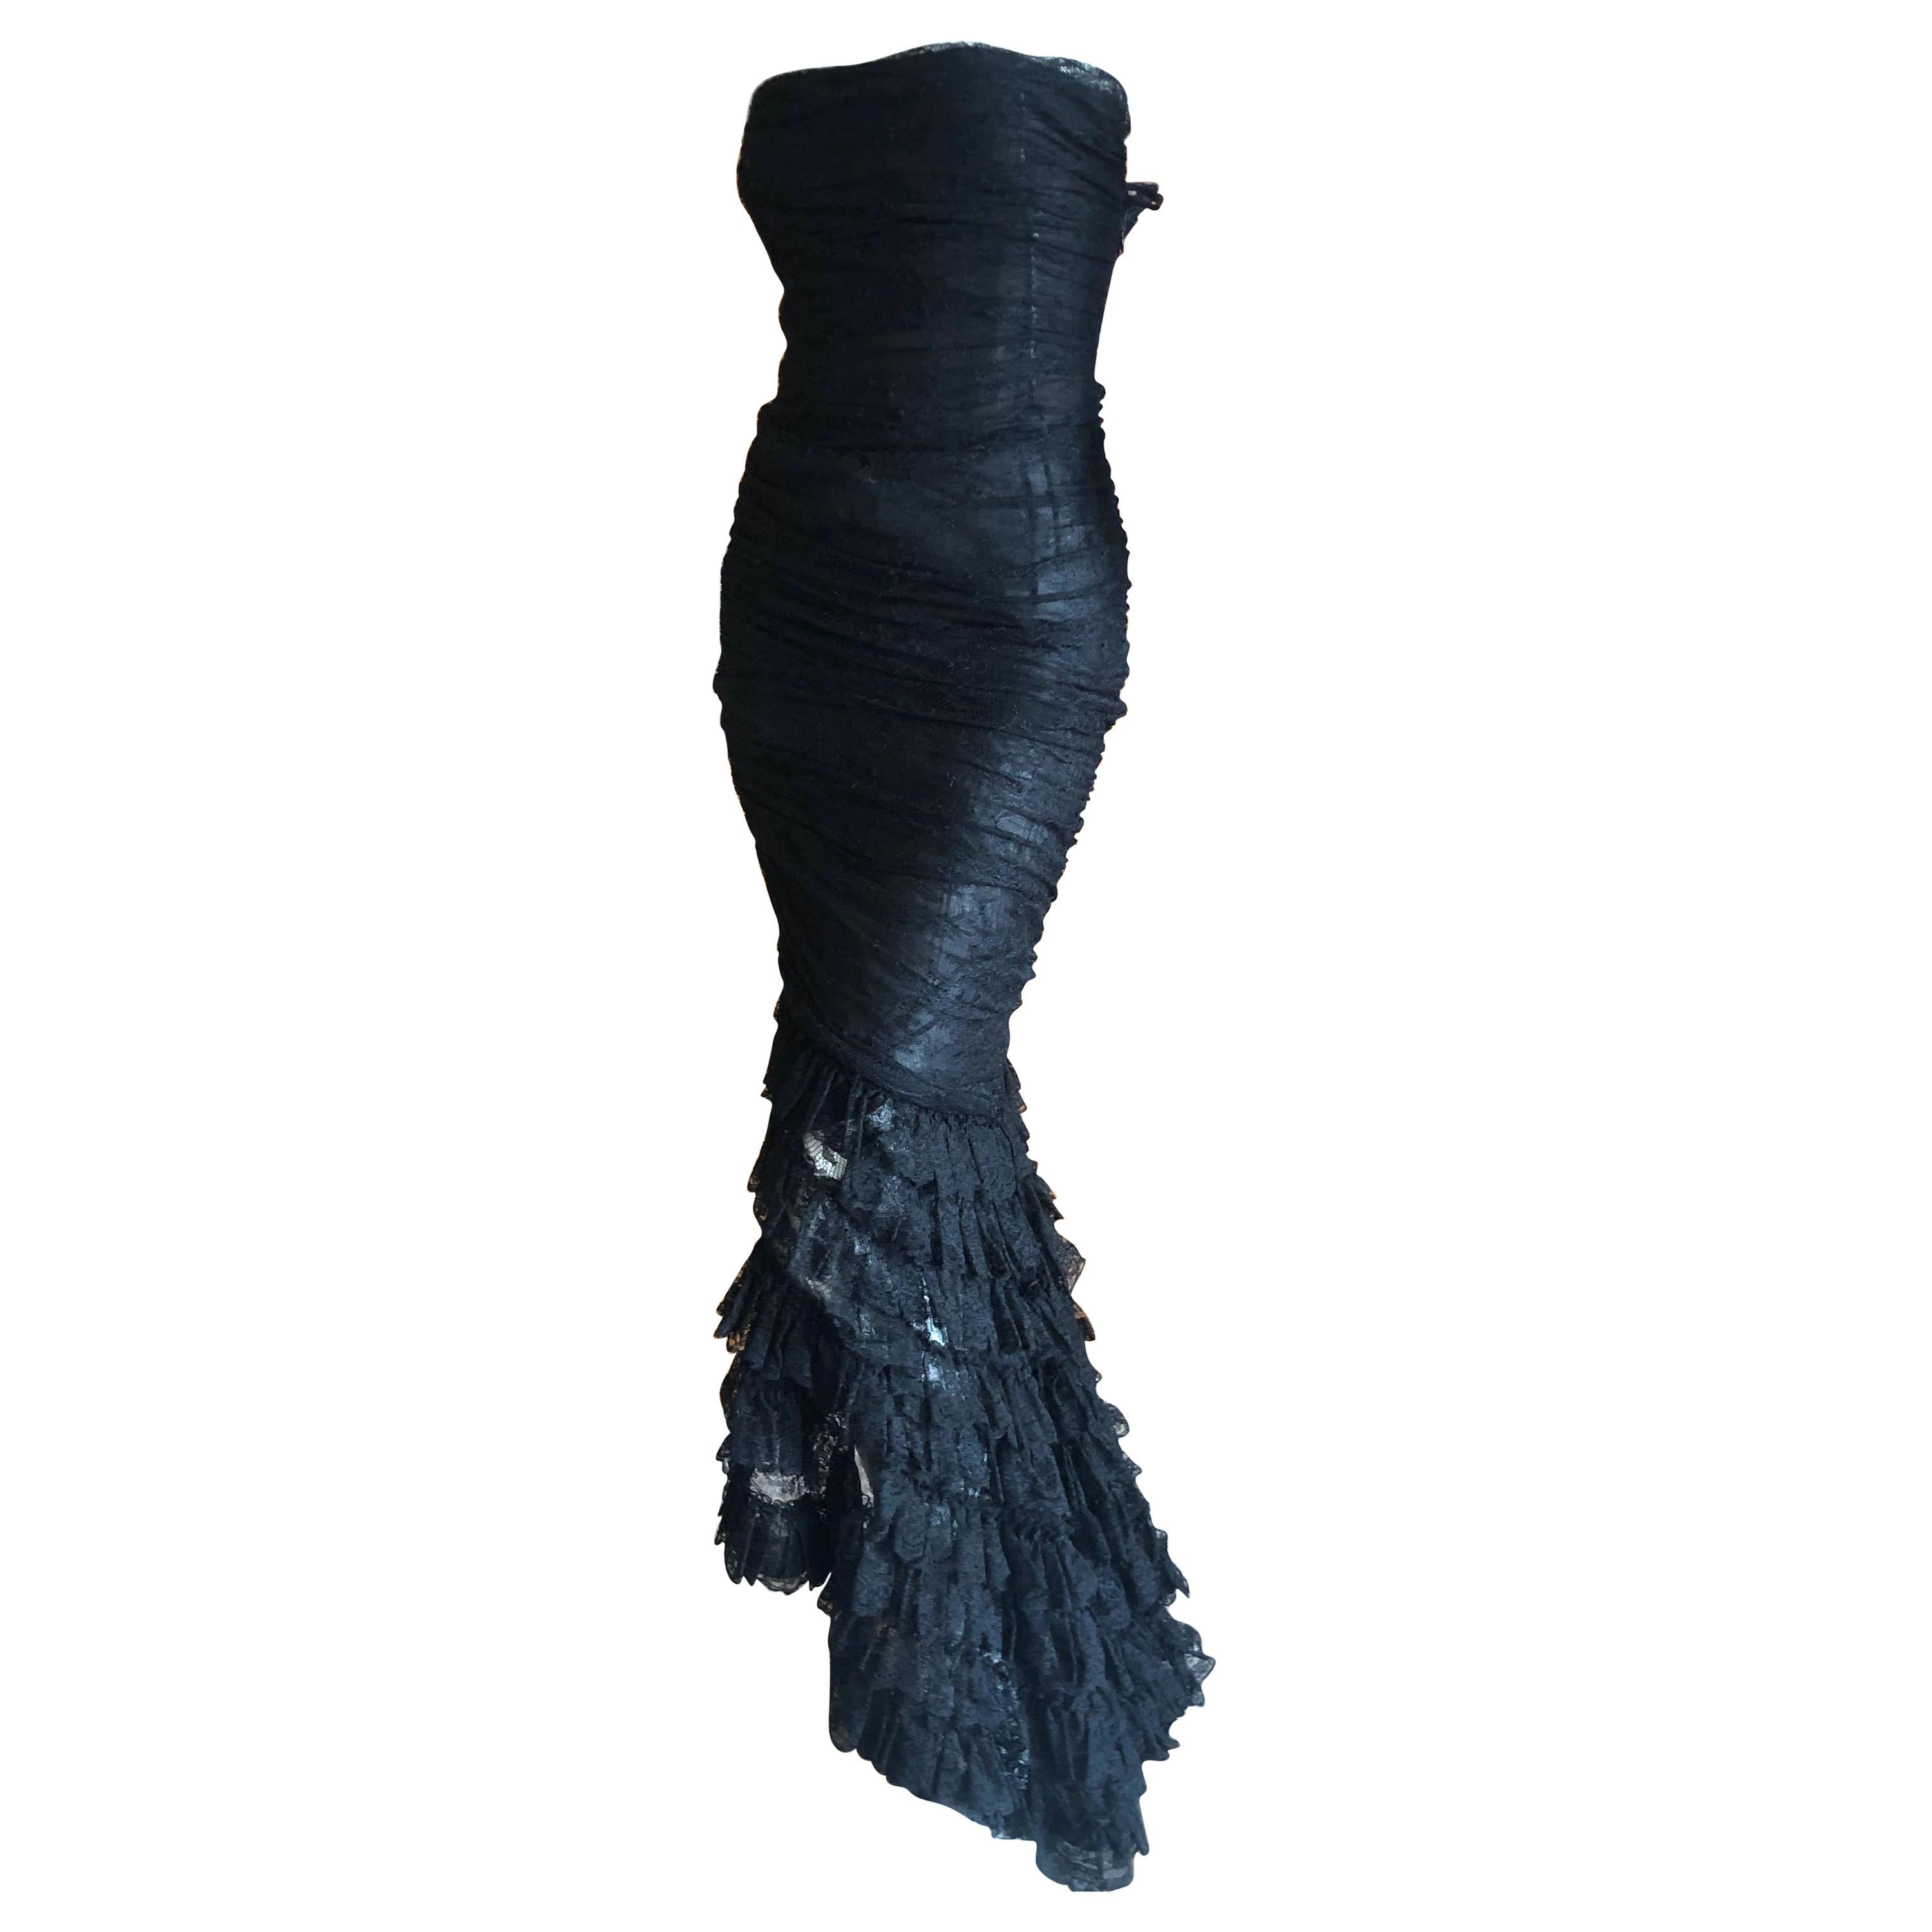  Oscar de la Renta Vintage 1980's Black Lace Evening Dress with Flamenco Ruffles For Sale